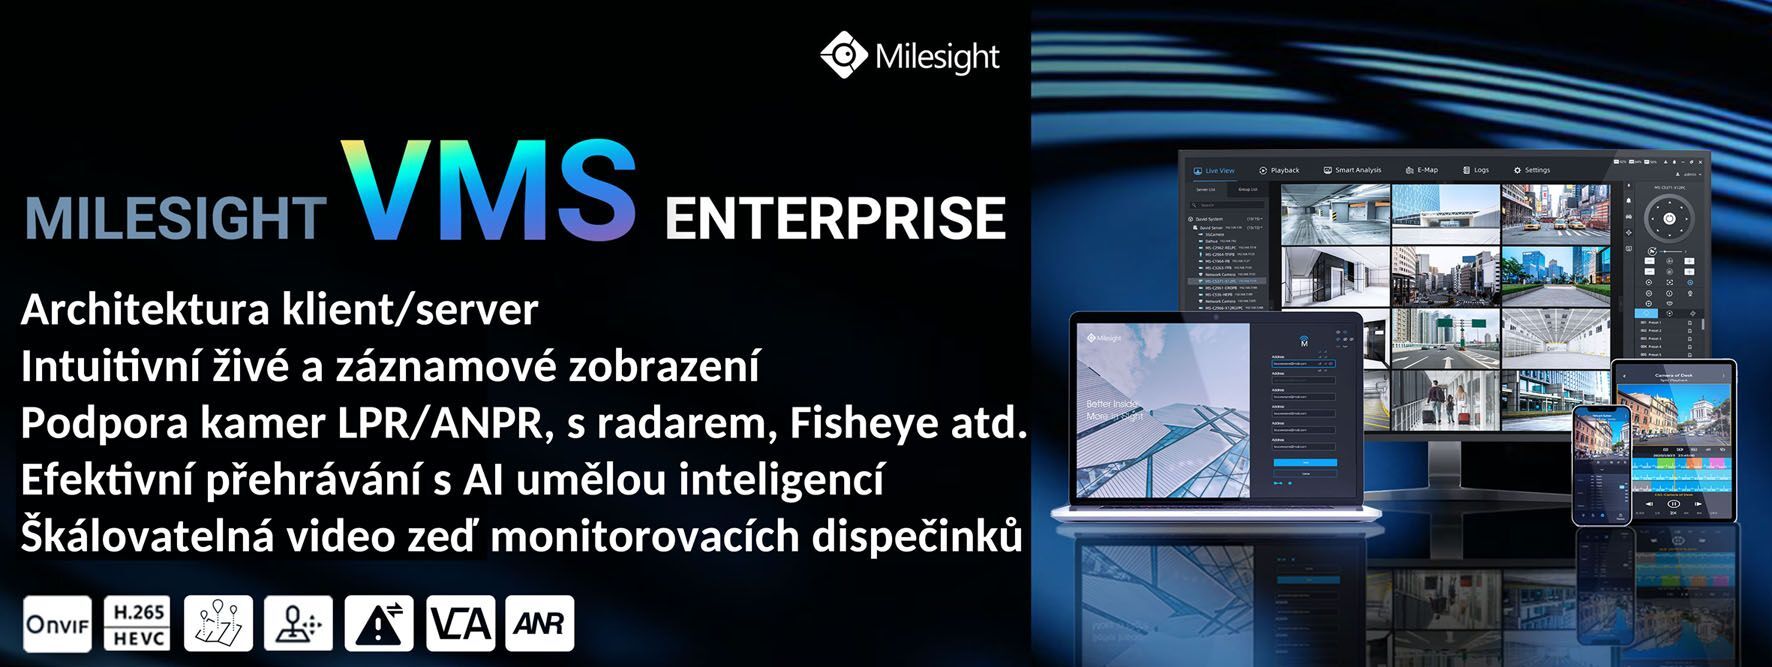 MS-MC-004 4CH Software VMS Enterprise